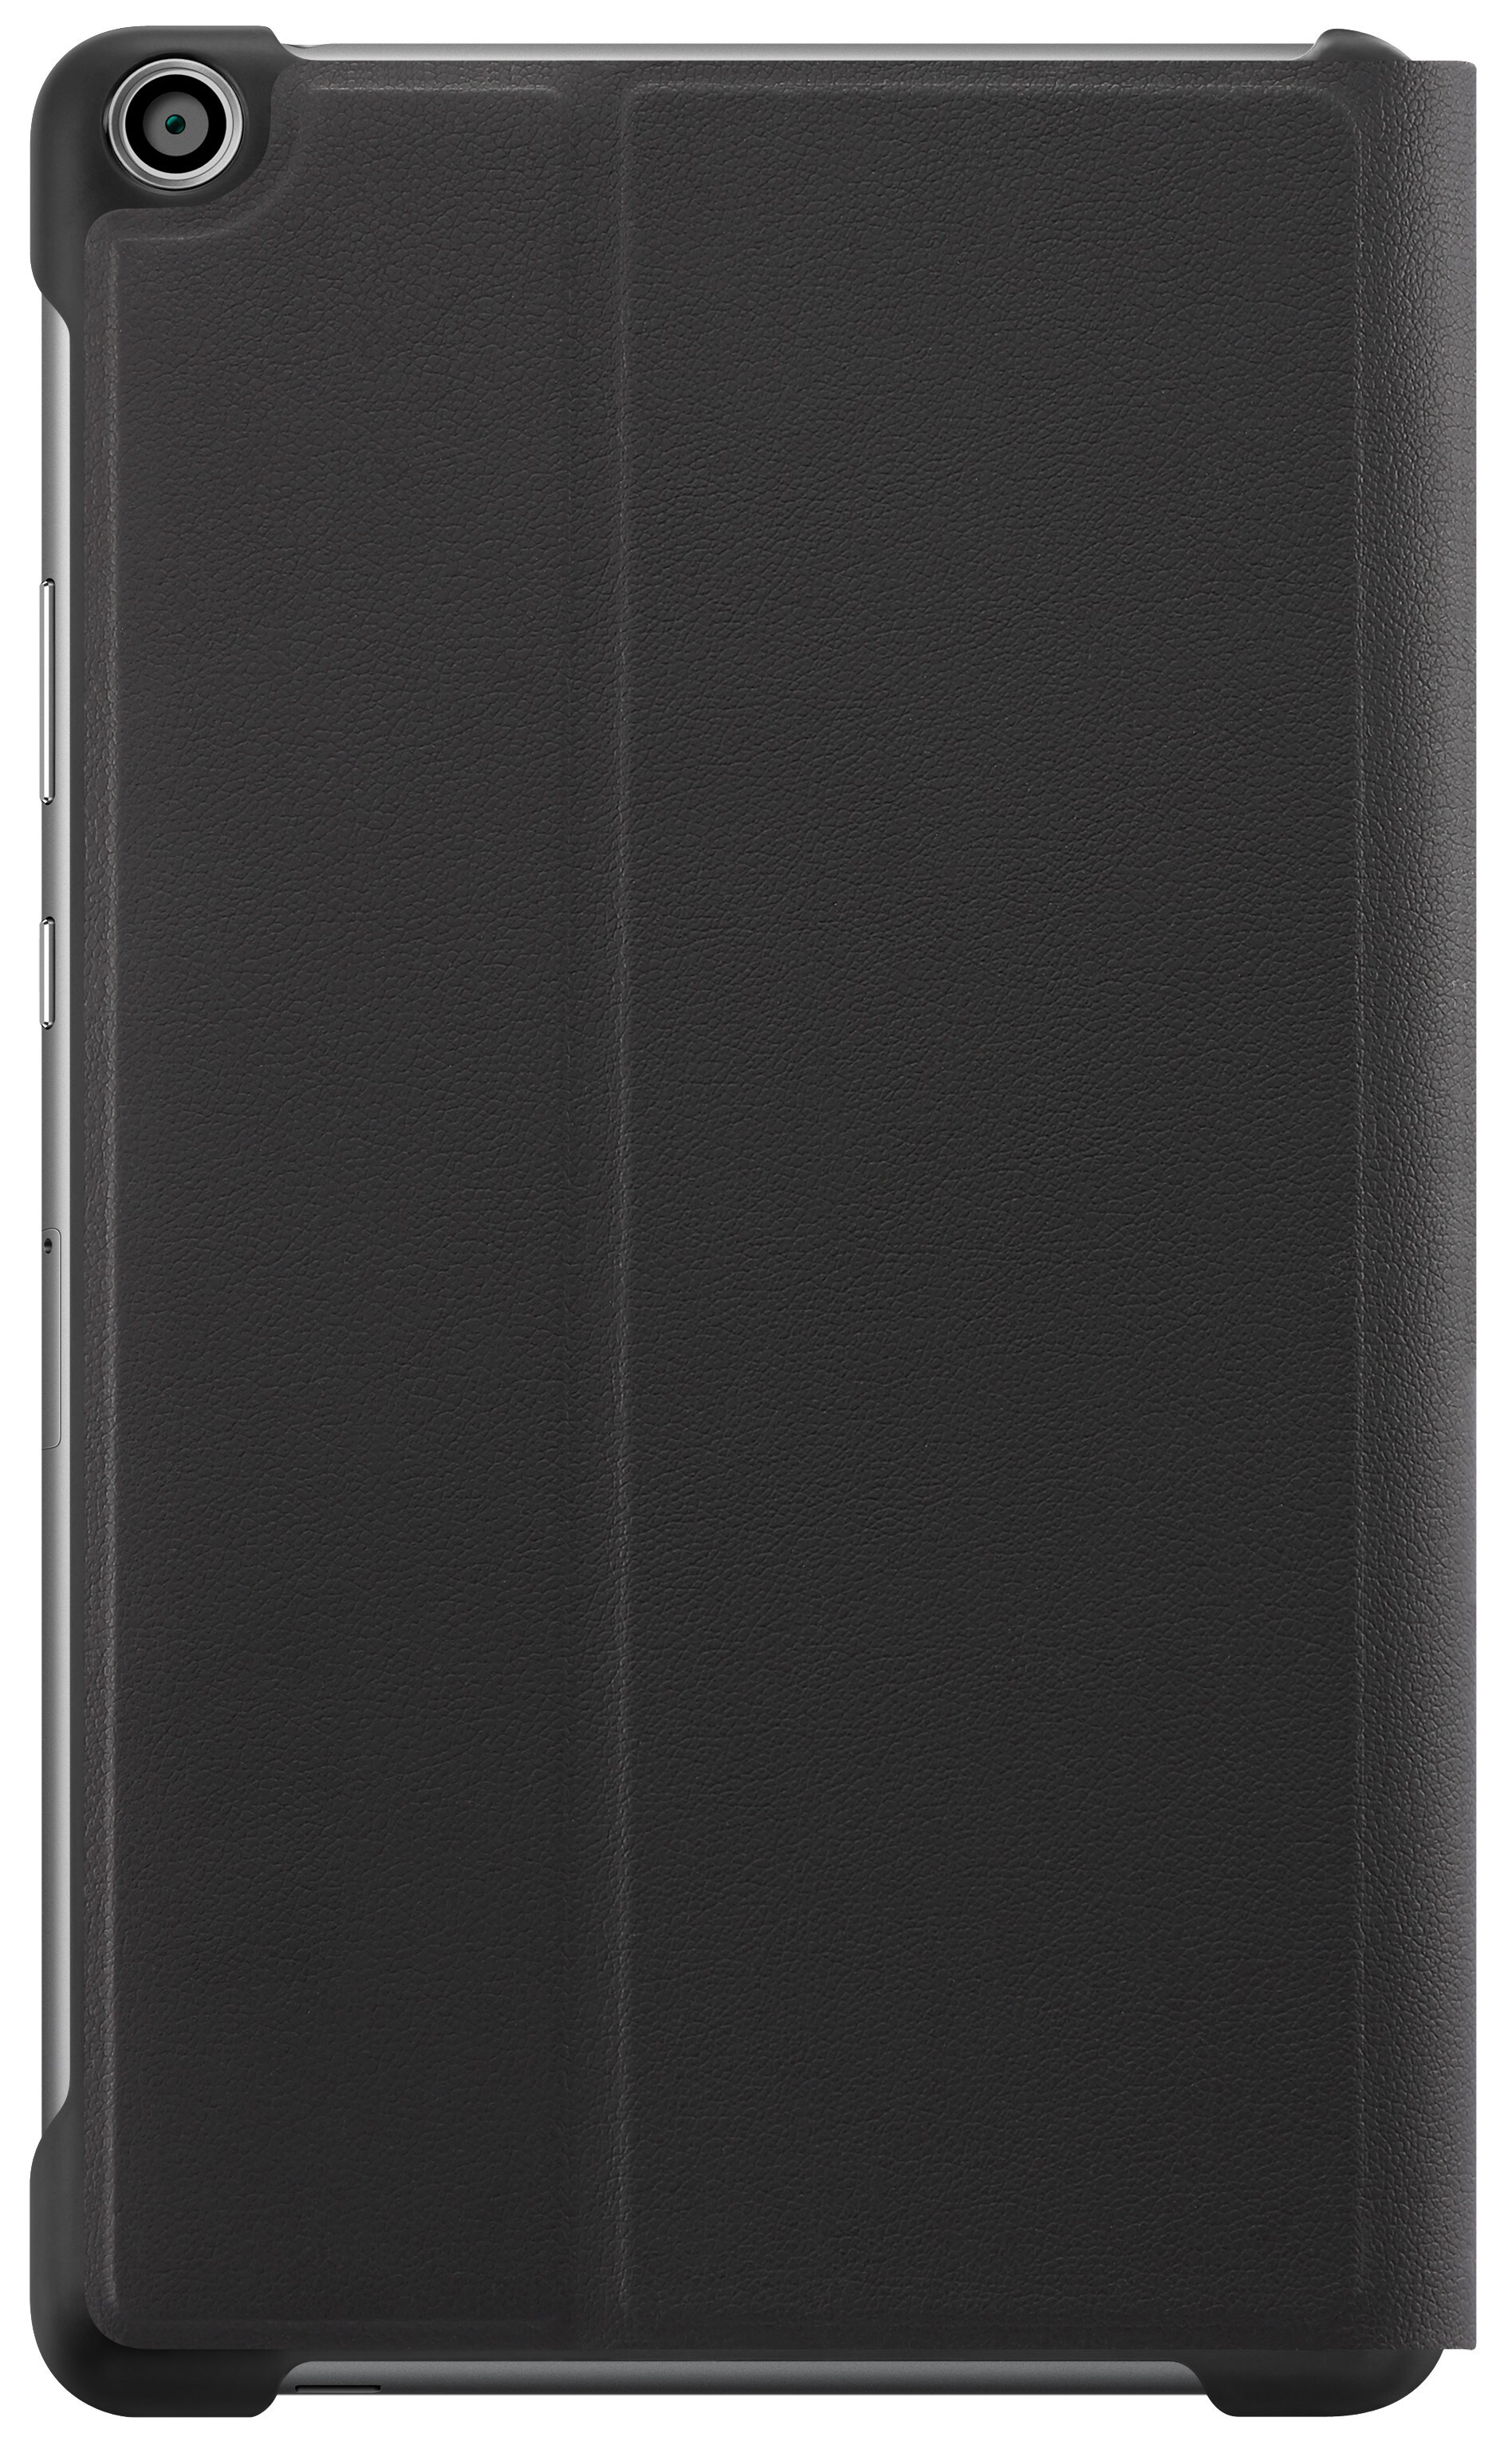 Huawei MediaPad T3 7 deksel (sort) - Tilbehør iPad og nettbrett - Elkjøp